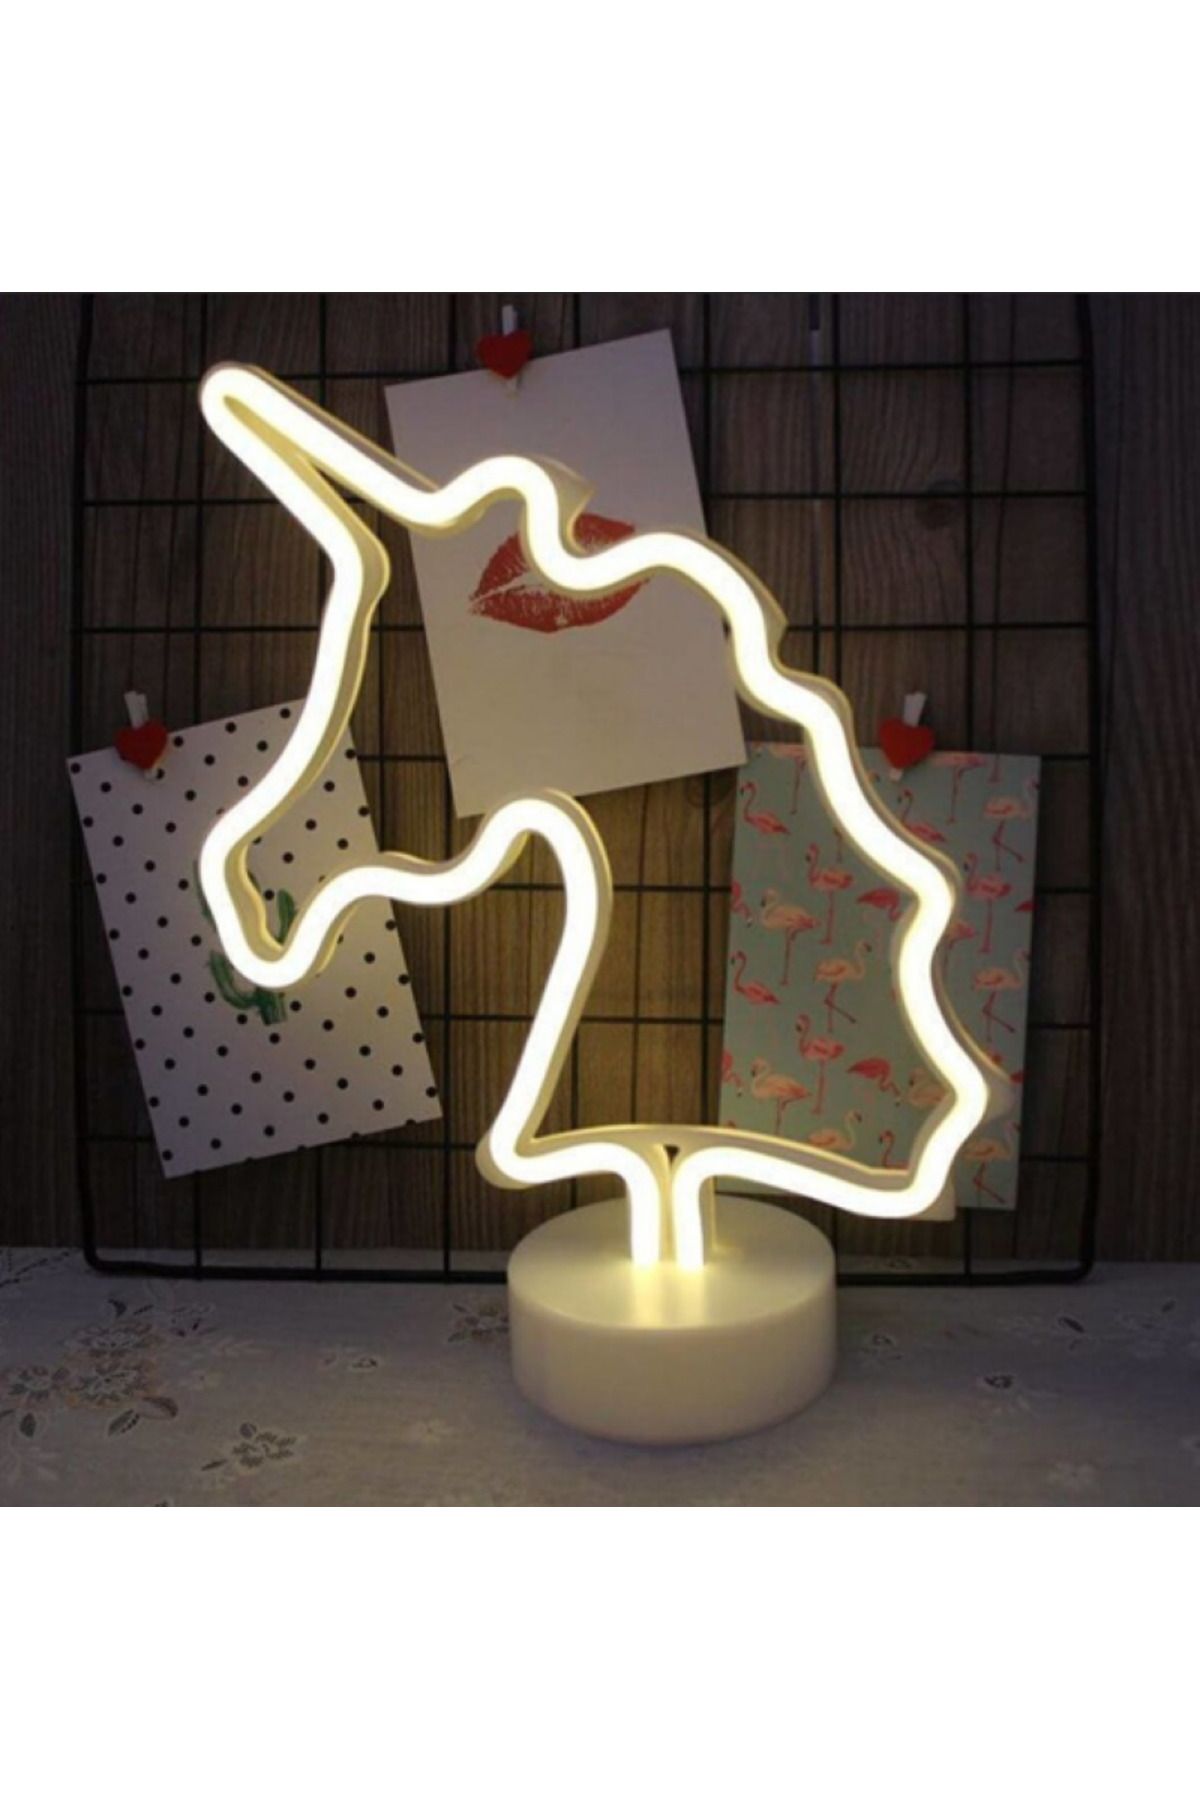 CAVAŞ sun hat Büyük Boy Usb'li Unicorn Neon Led Işıklı Masa Ve Gece Lambası Dekoratif Aydınlatma